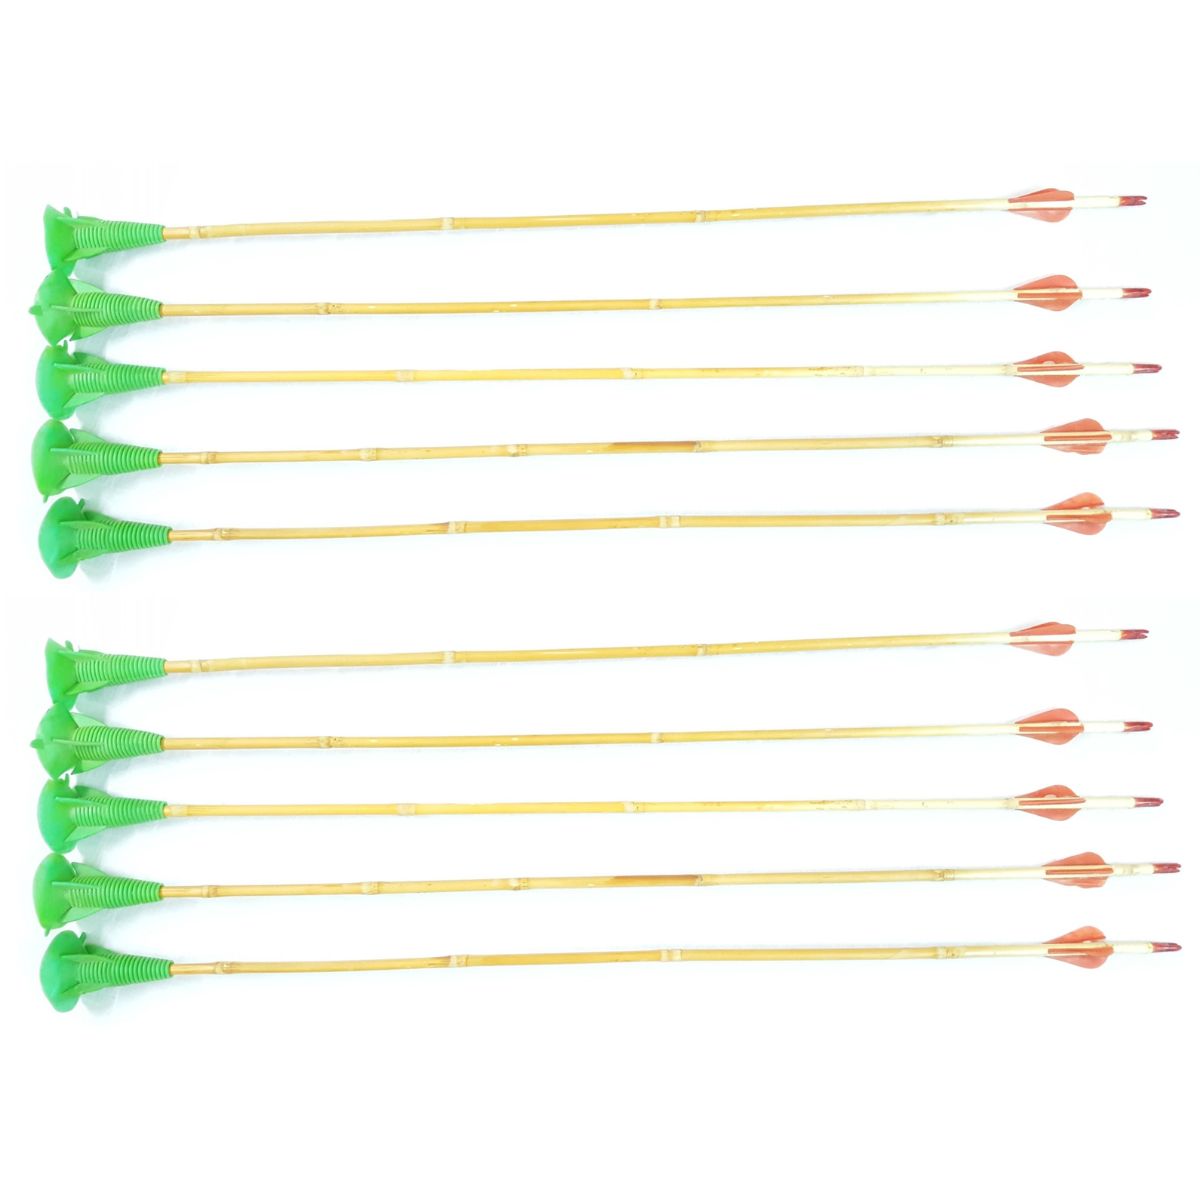 Stick Cane Arrow Set - ACA-06 3